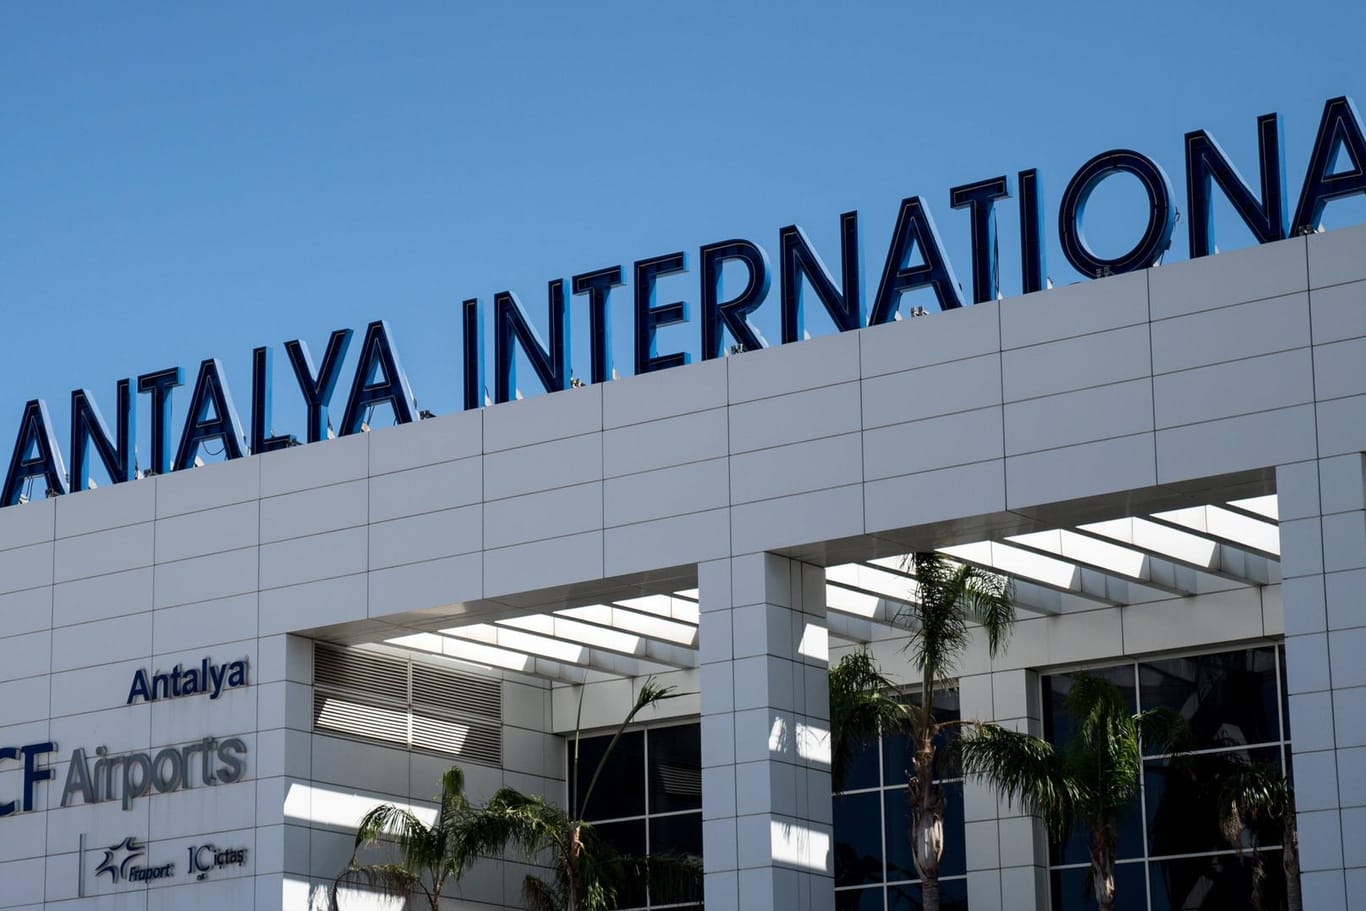 Blick auf dem Antalya International Airport (Symbolbild): Dort ist ein Wuppertaler festgenommen worden. Nun muss er sich vor Gericht verantworten.